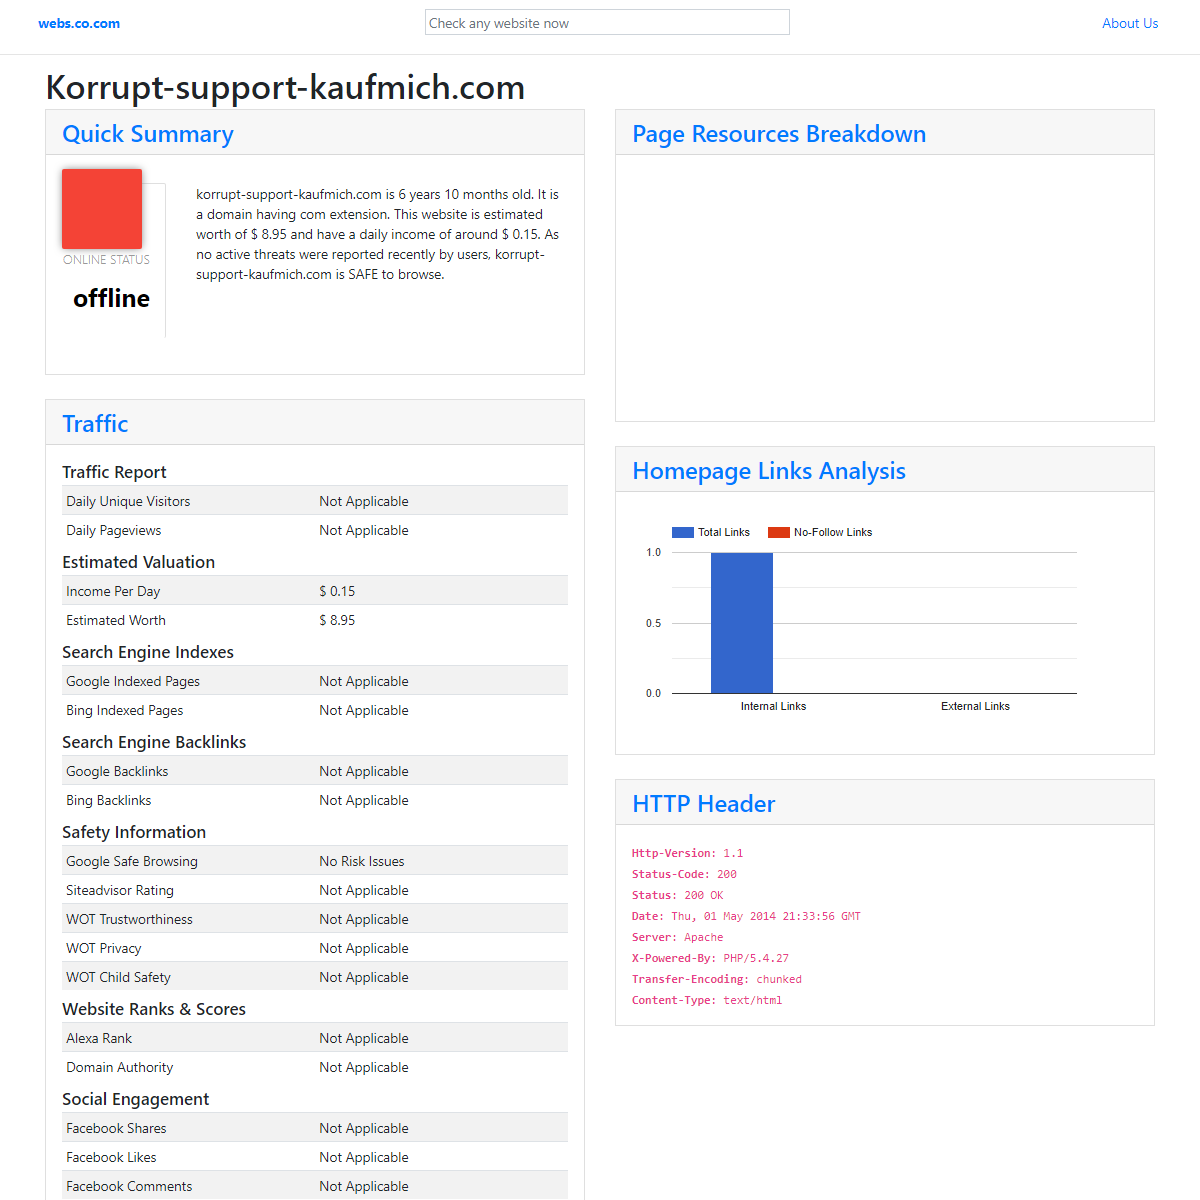 A complete backup of http://korrupt-support-kaufmich.com.webs.co.com/